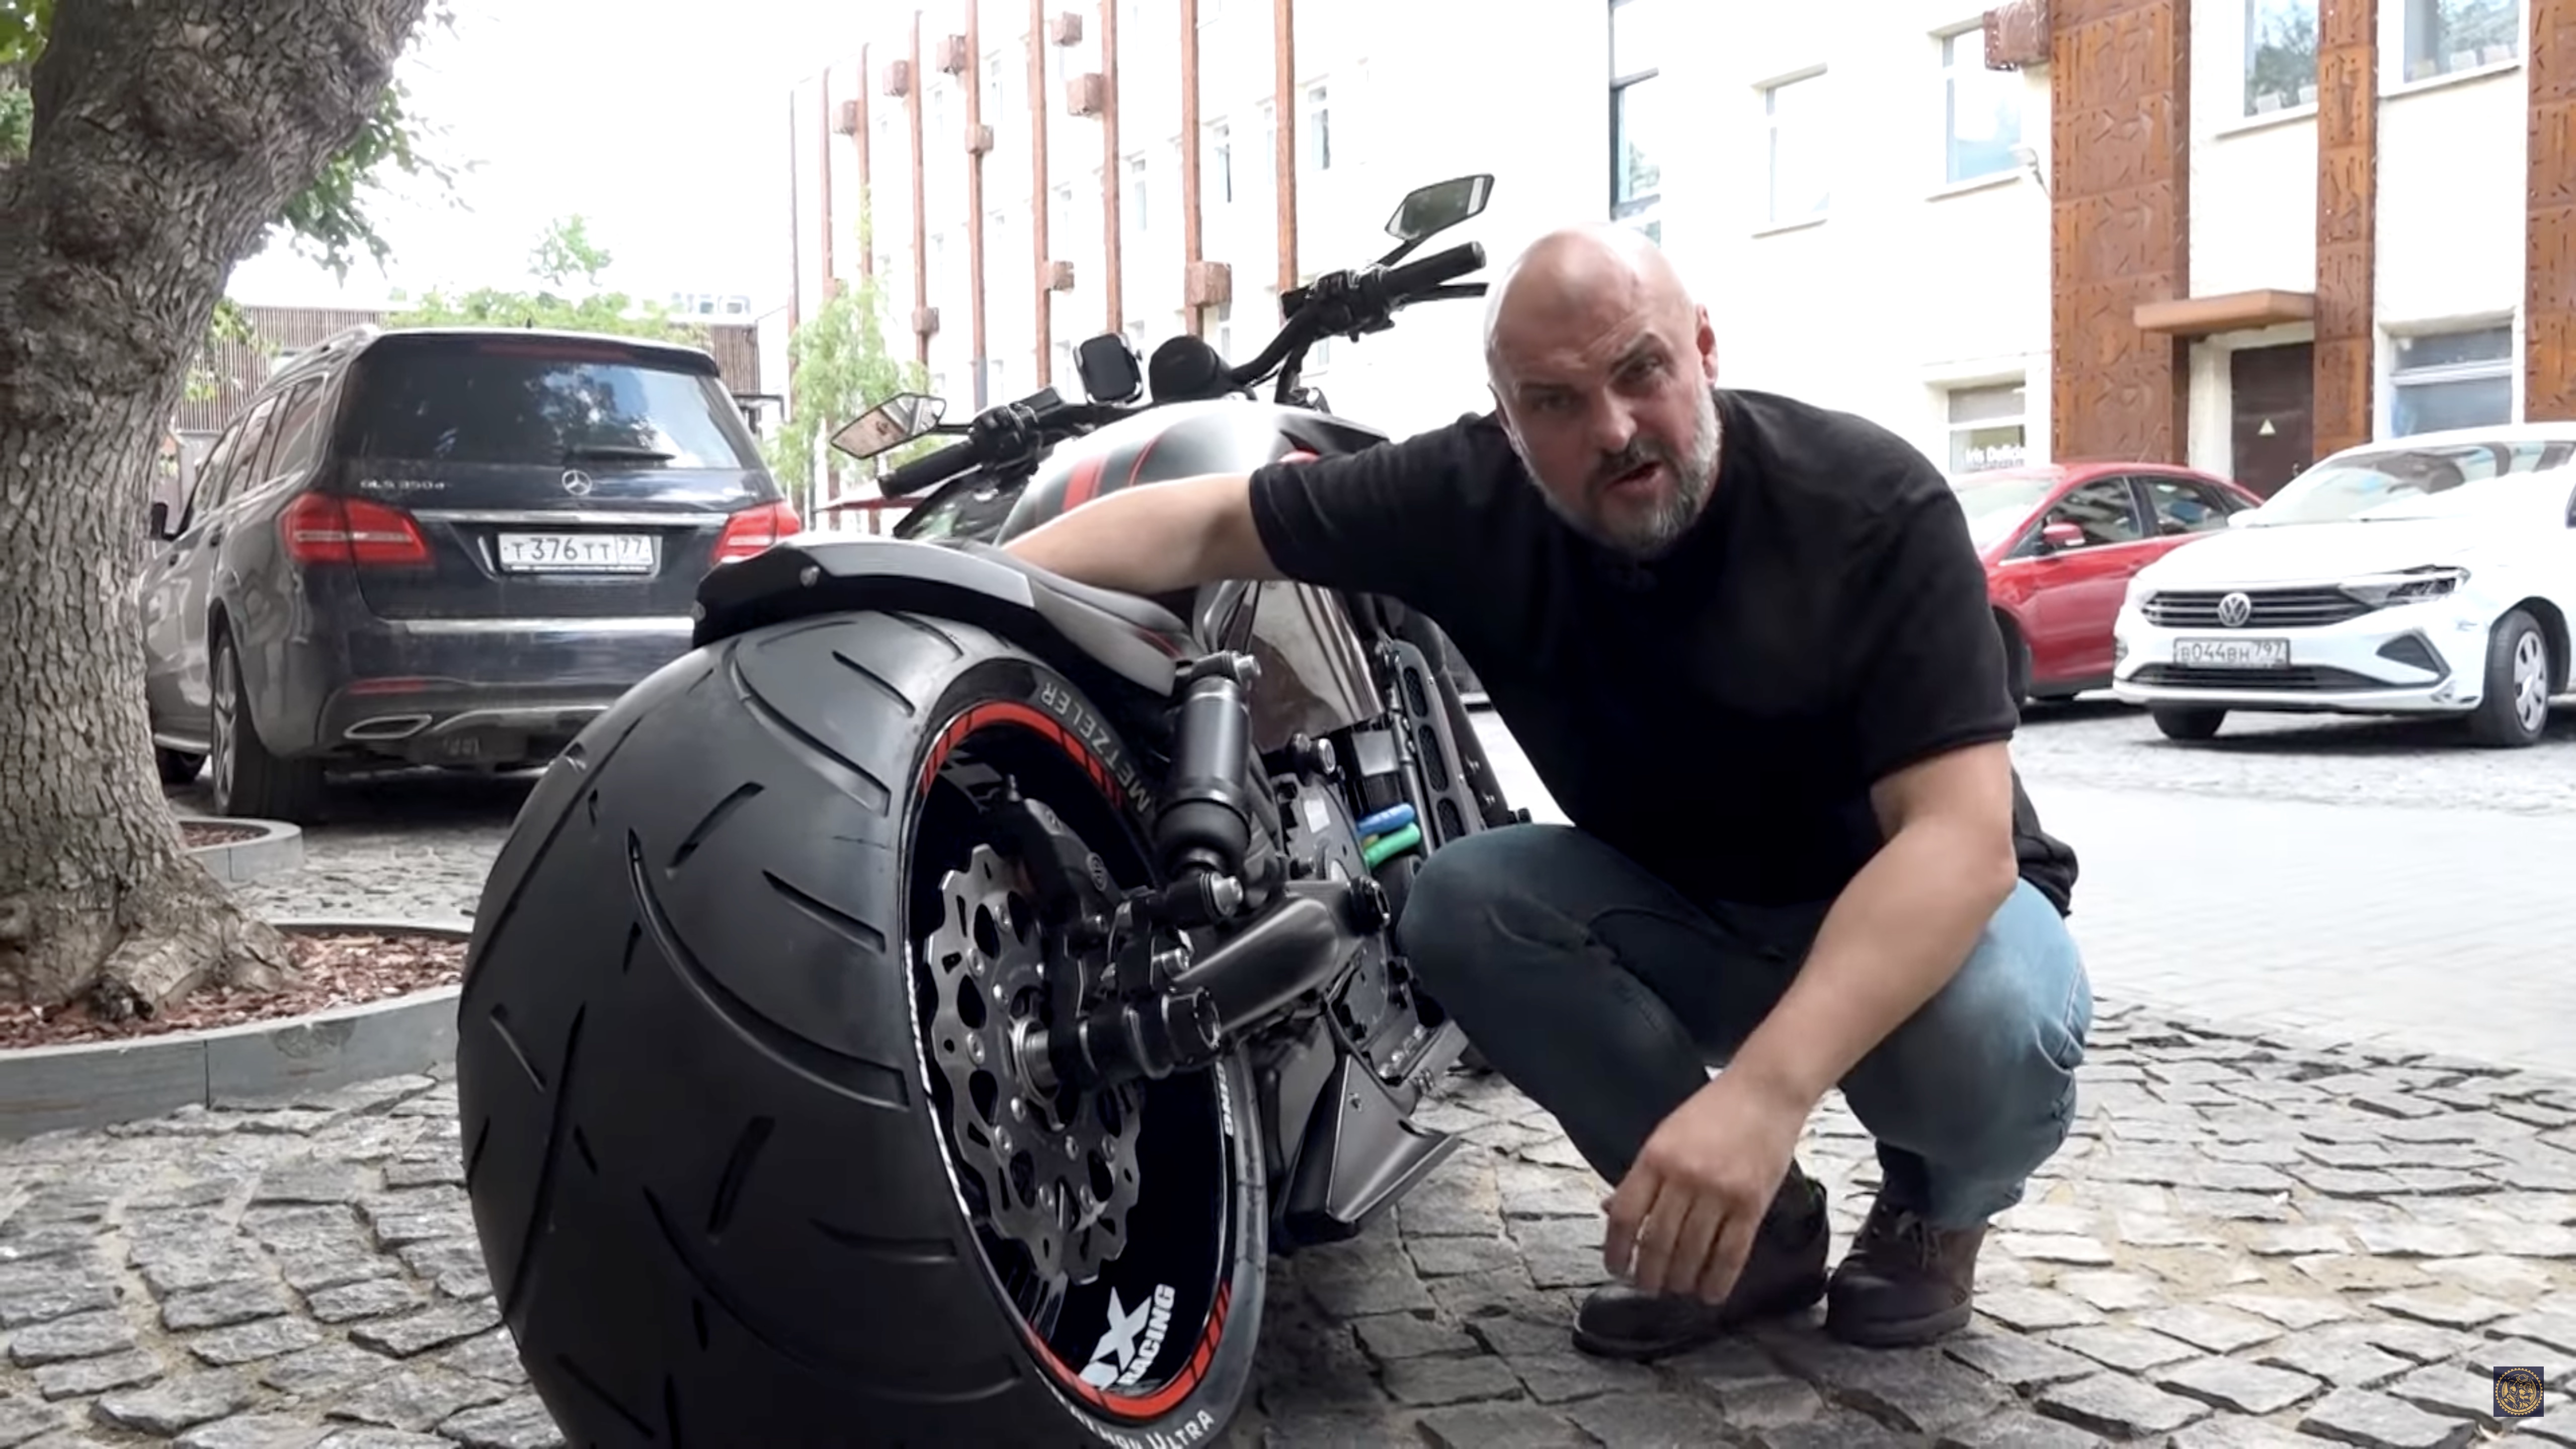 Анонс видео-теста Уникальный V-Rod на электротяге: новый взгляд на пауэр-крузер Harley-Davidson